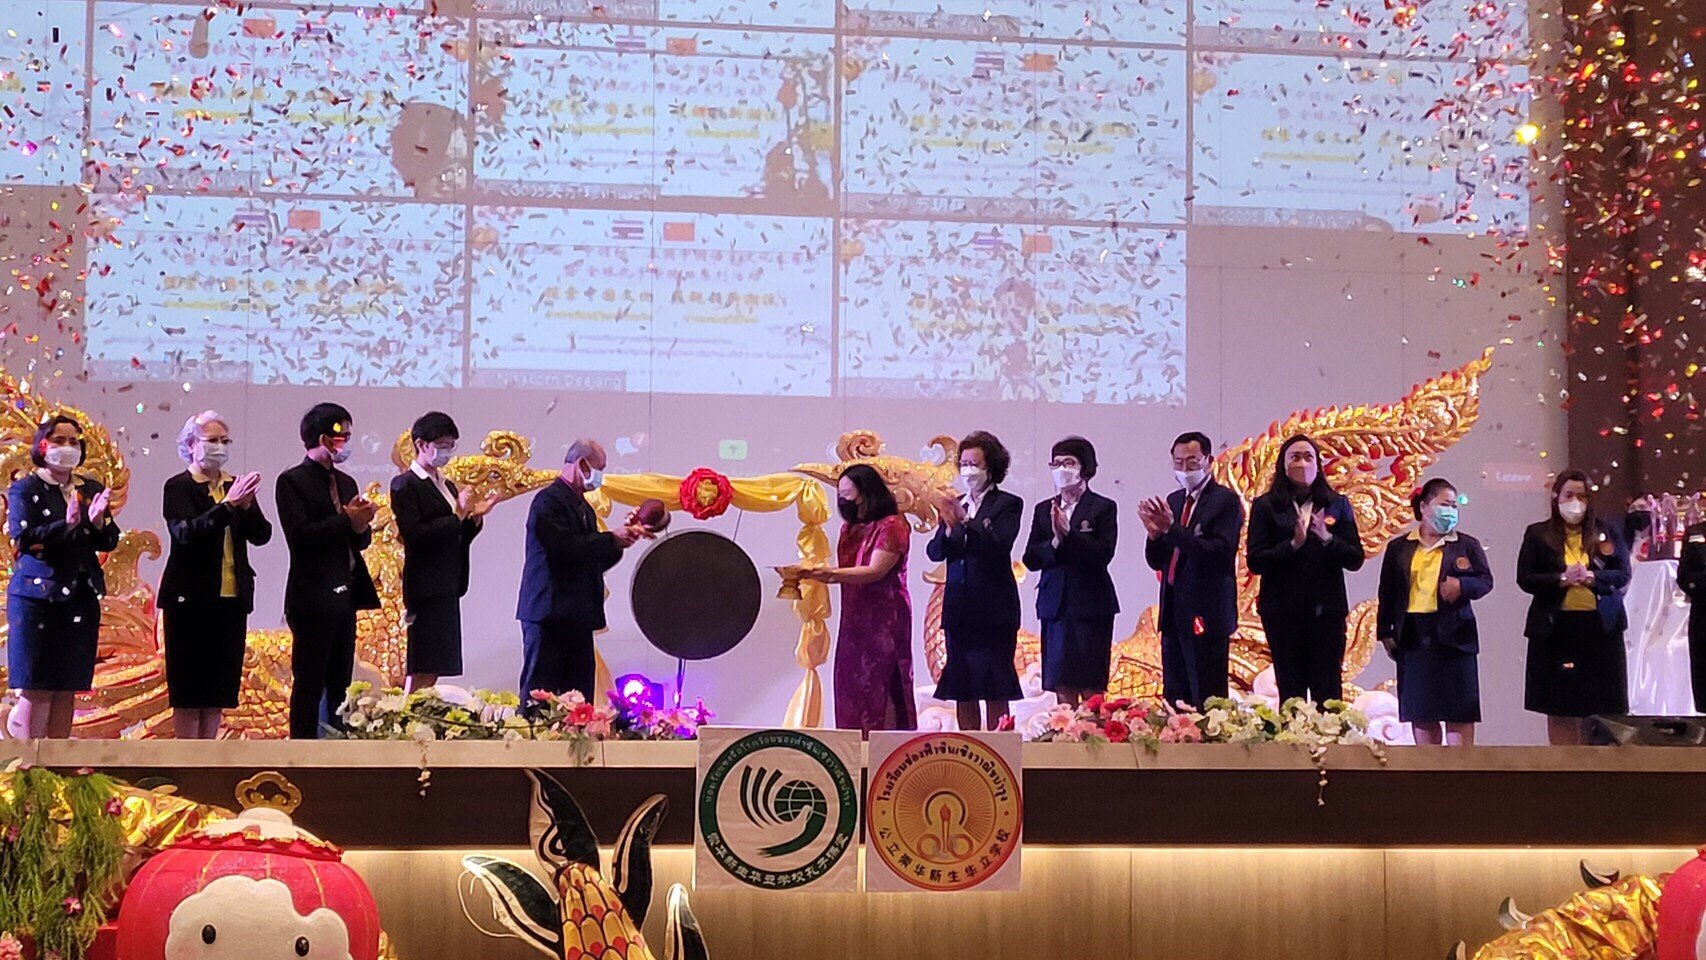 การแข่งขันภาษาและวัฒนธรรมจีนแห่งประเทศไทยชิงถ้วยรางวัล “สถานกงสุลใหญ่แห่งสาธารณรัฐประชาชนจีนประจำเชียงใหม่”ครั้งที่ 2 และวันสถาบันขงจื่อทั่วโลก ประจำปี 2564 สำเร็จด้วยดี